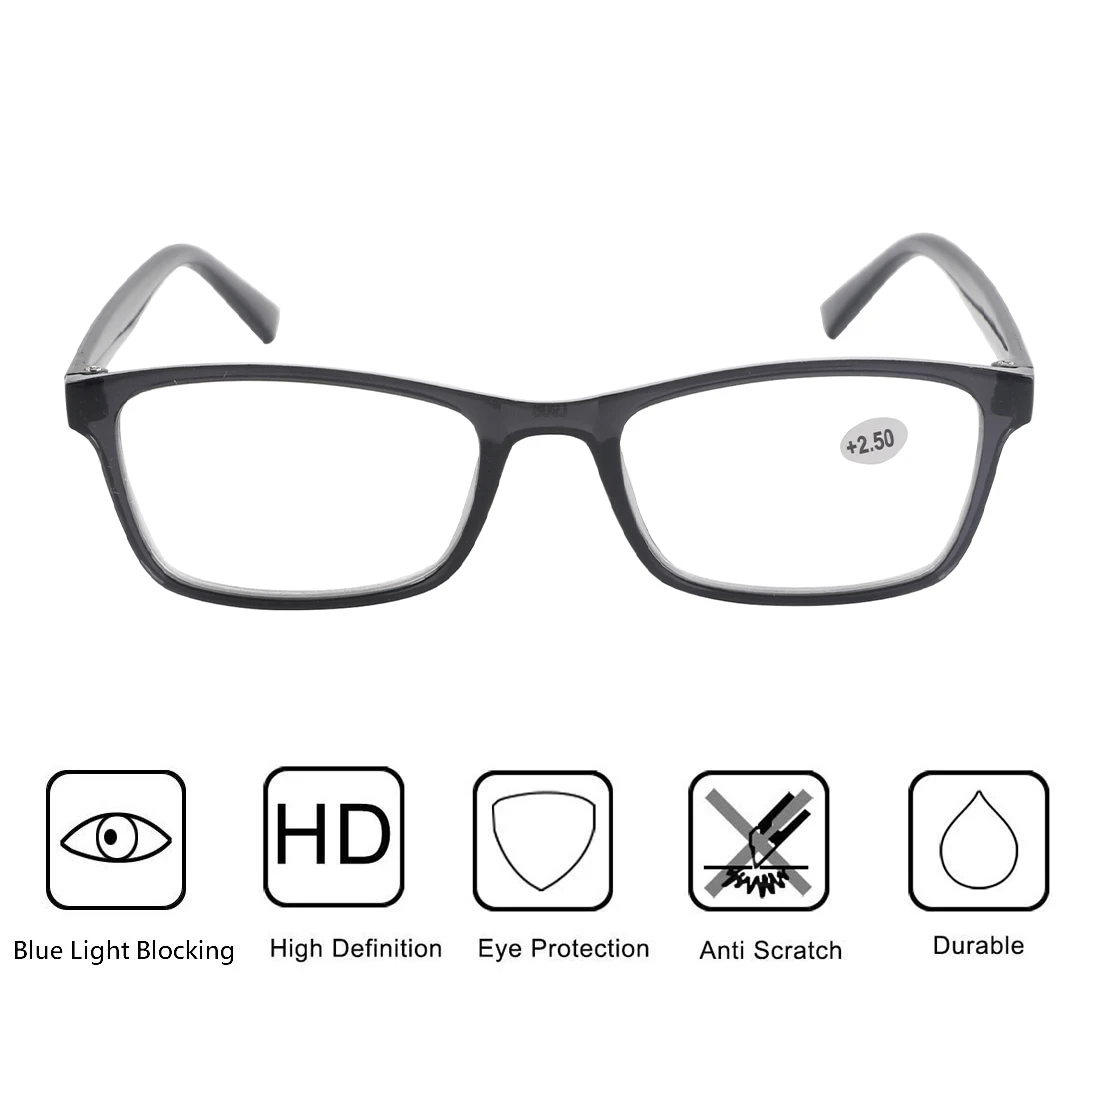 Móda čtení brýle proti modré lehký ženy muži počítač presbyopie dalekozrakost čtení eyeglasses+1.0+1.5+2.0+2.5+3.0+3.5+4.0